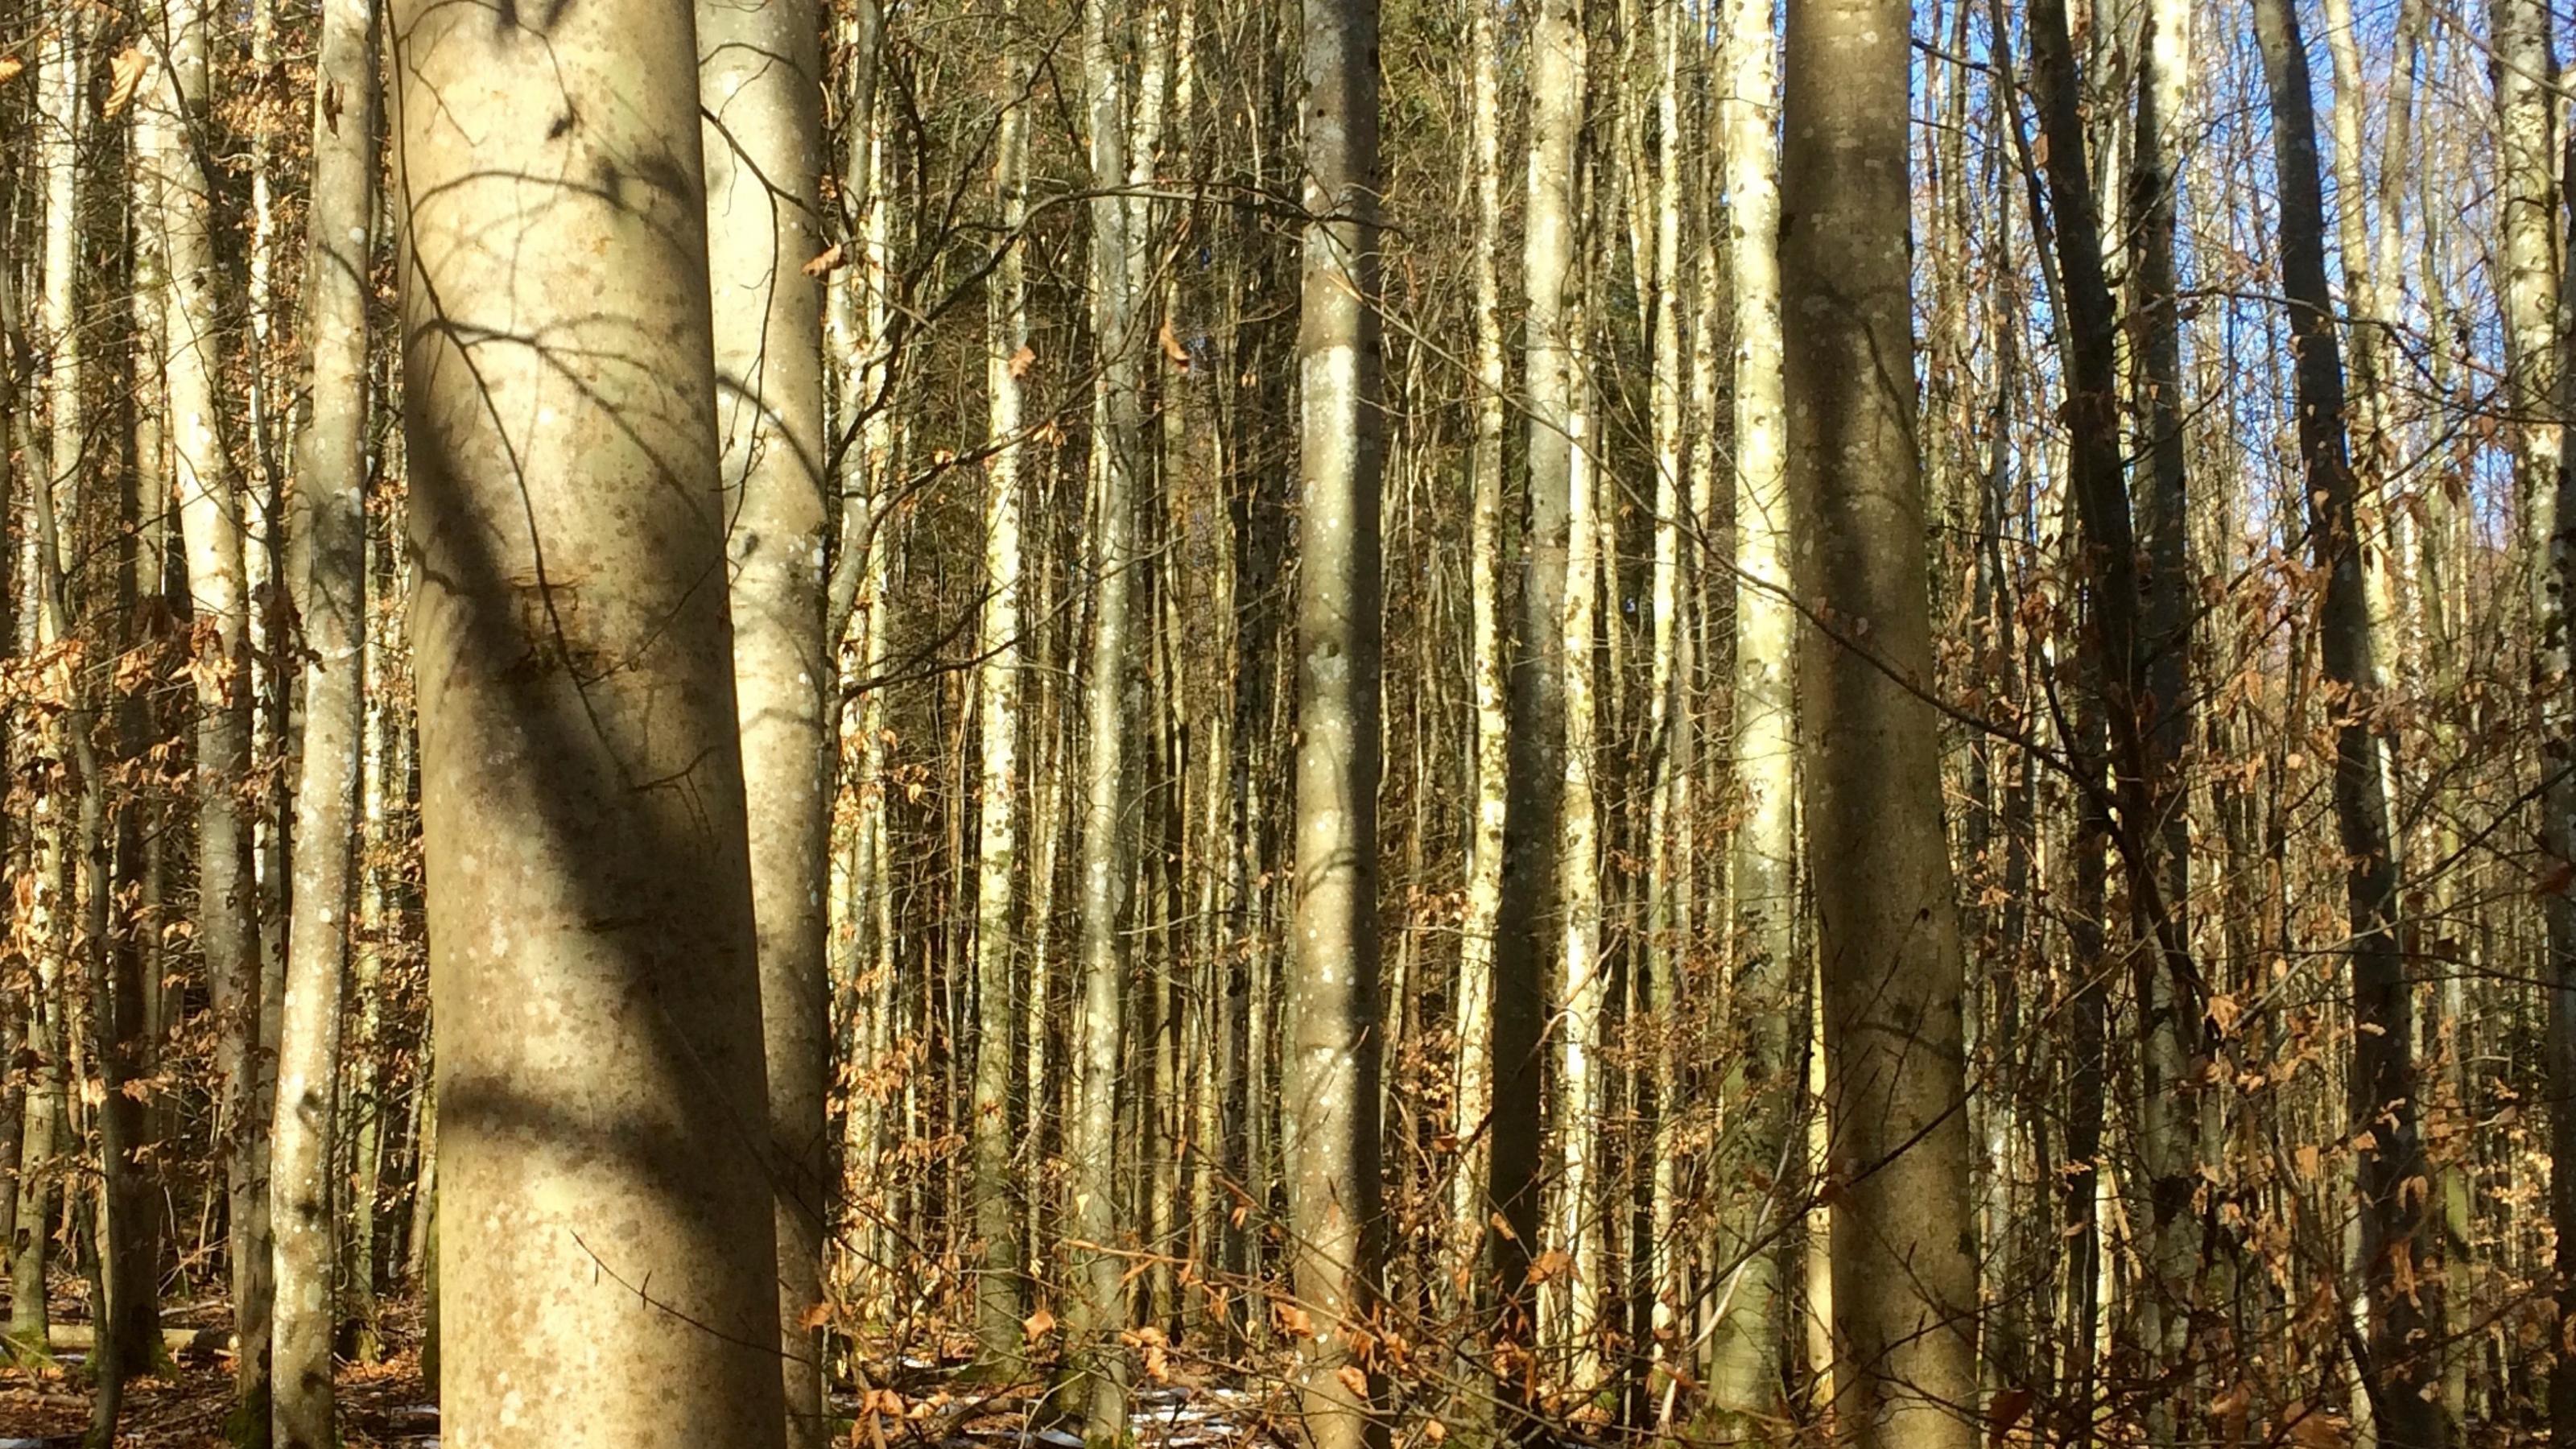 Junge Bäume stehen in einem früher fortstwirtschaftlich genutzten Wald.